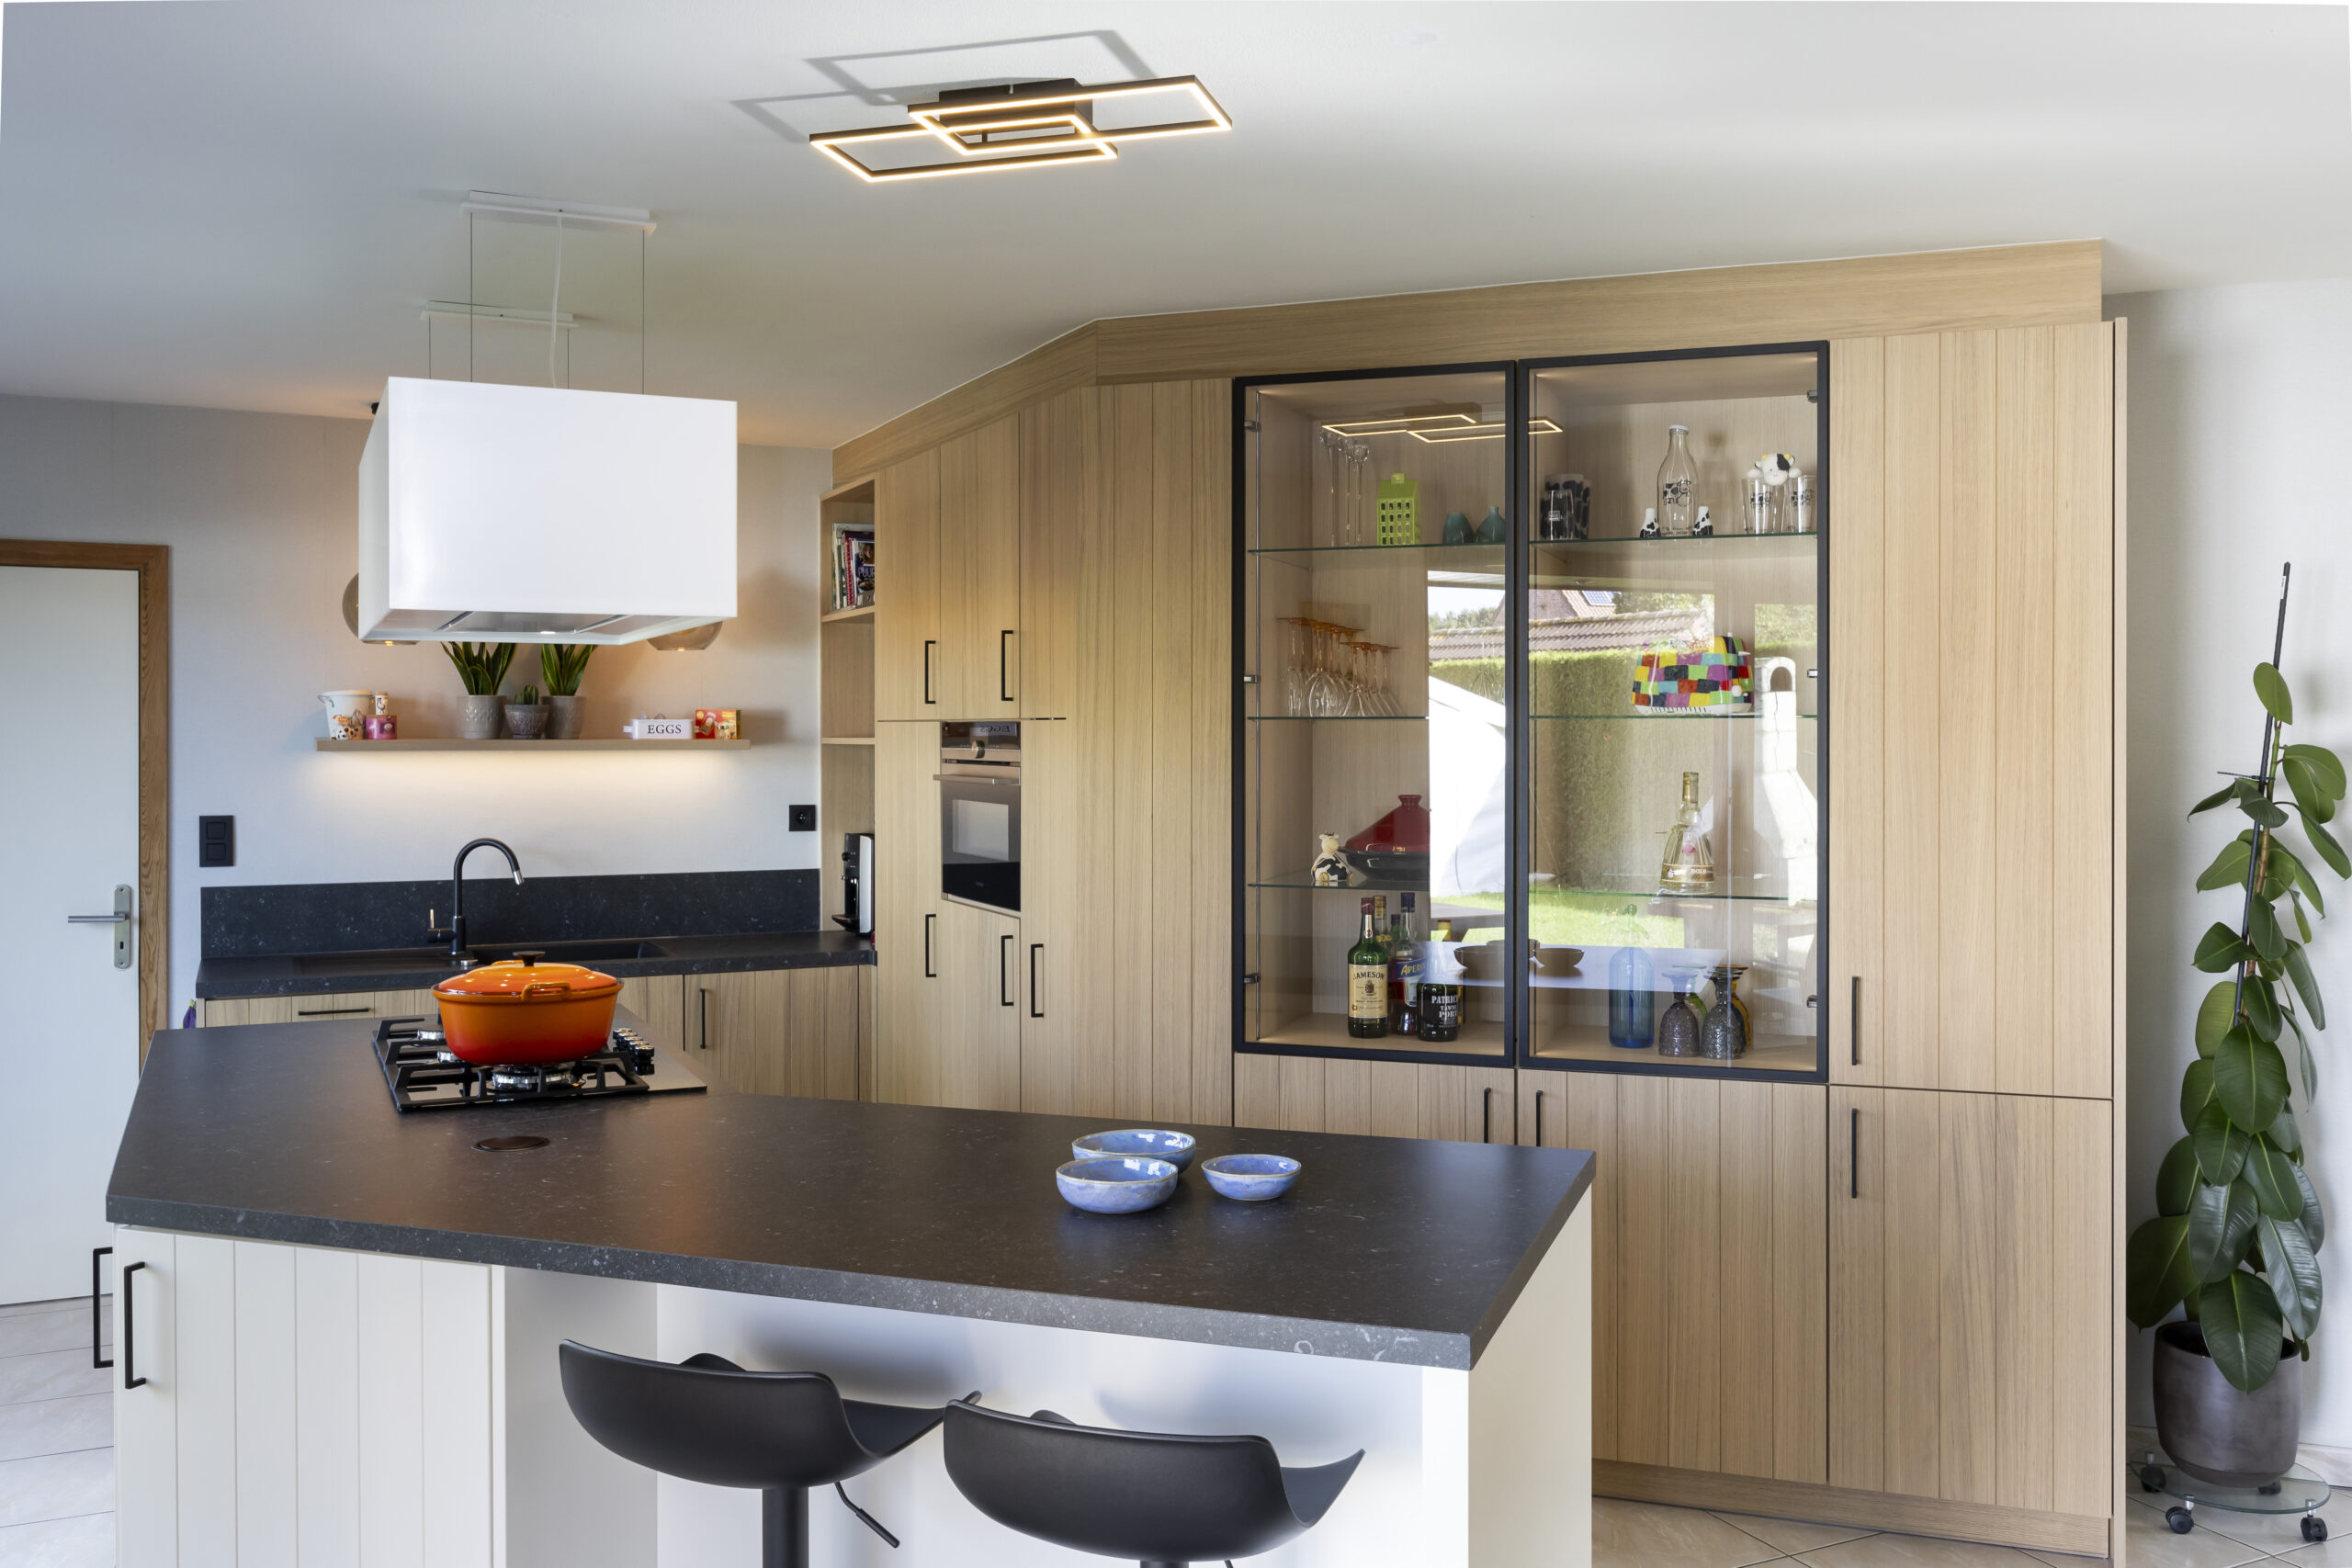 Landelijke fineer keuken in combinatie met witte poederlak grepen keramisch werkblad hoekoplossing glaze deuren led verlichting